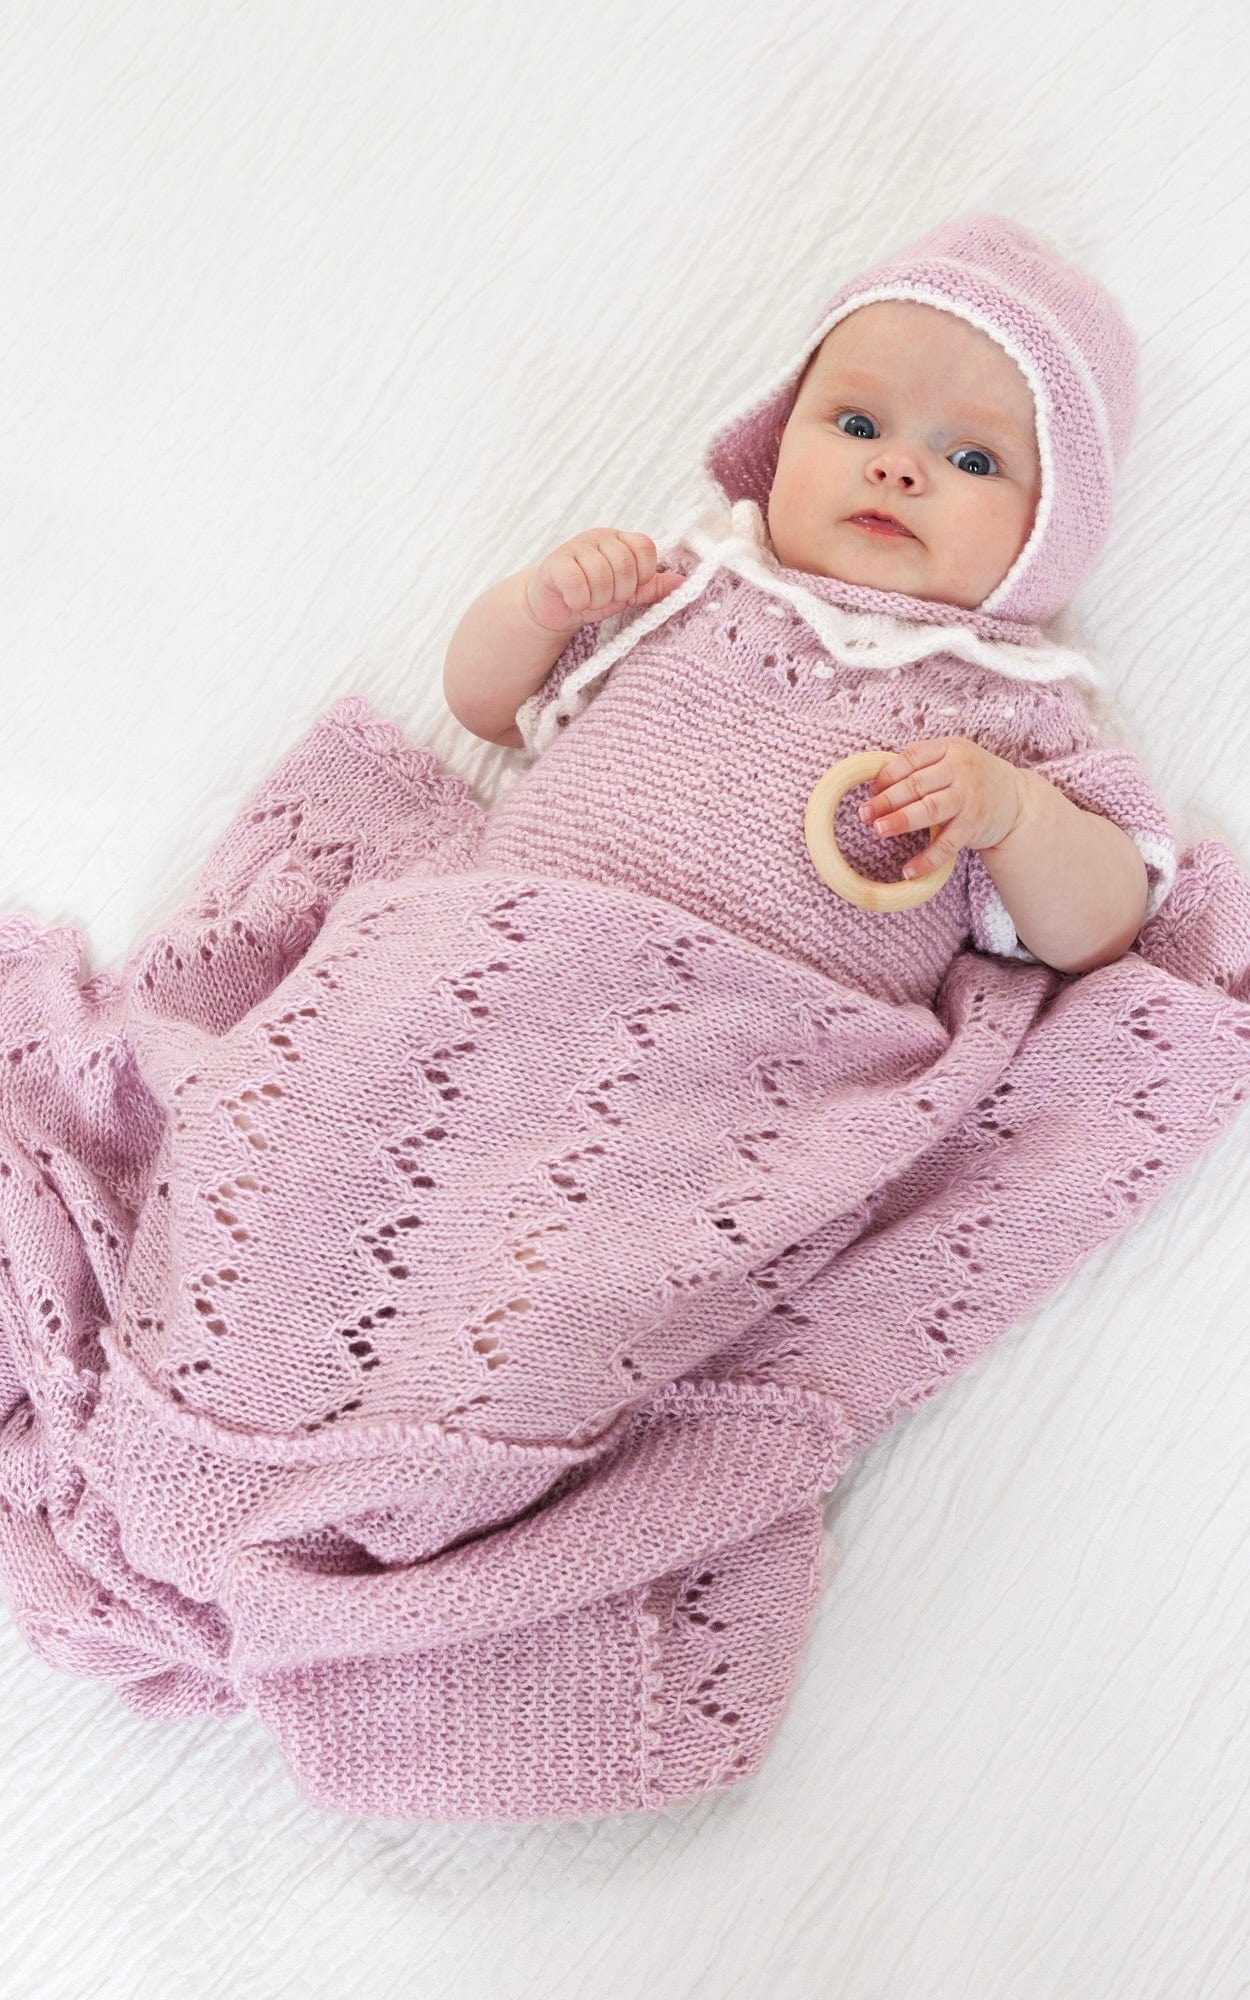 Baby Decke mit Ajourmuster - ECOPUNO - Strickset von LANA GROSSA jetzt online kaufen bei OONIQUE